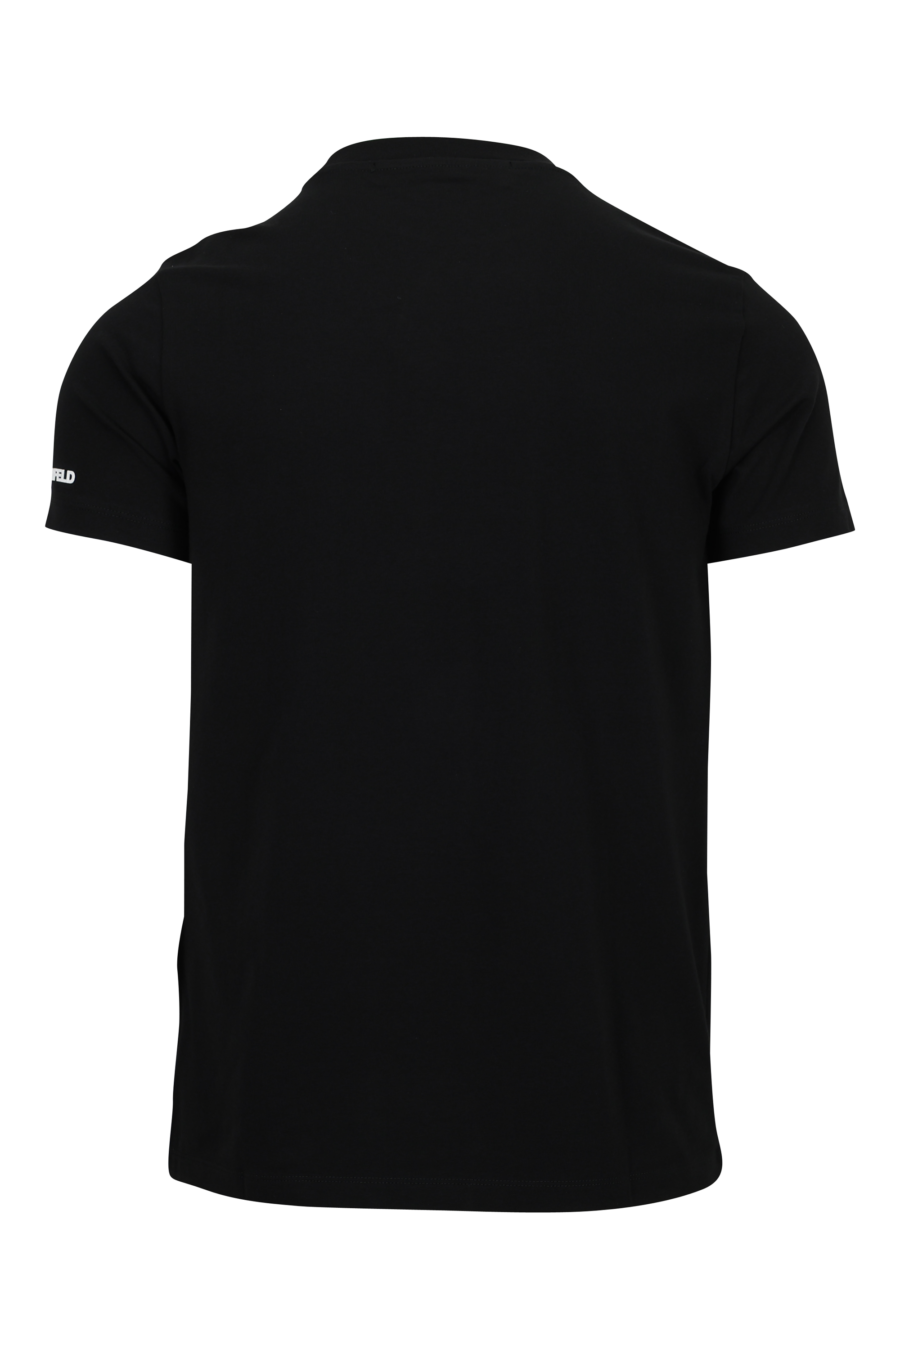 Camiseta negra con maxilogo en goma "karl" en azul - 4062226788915 1